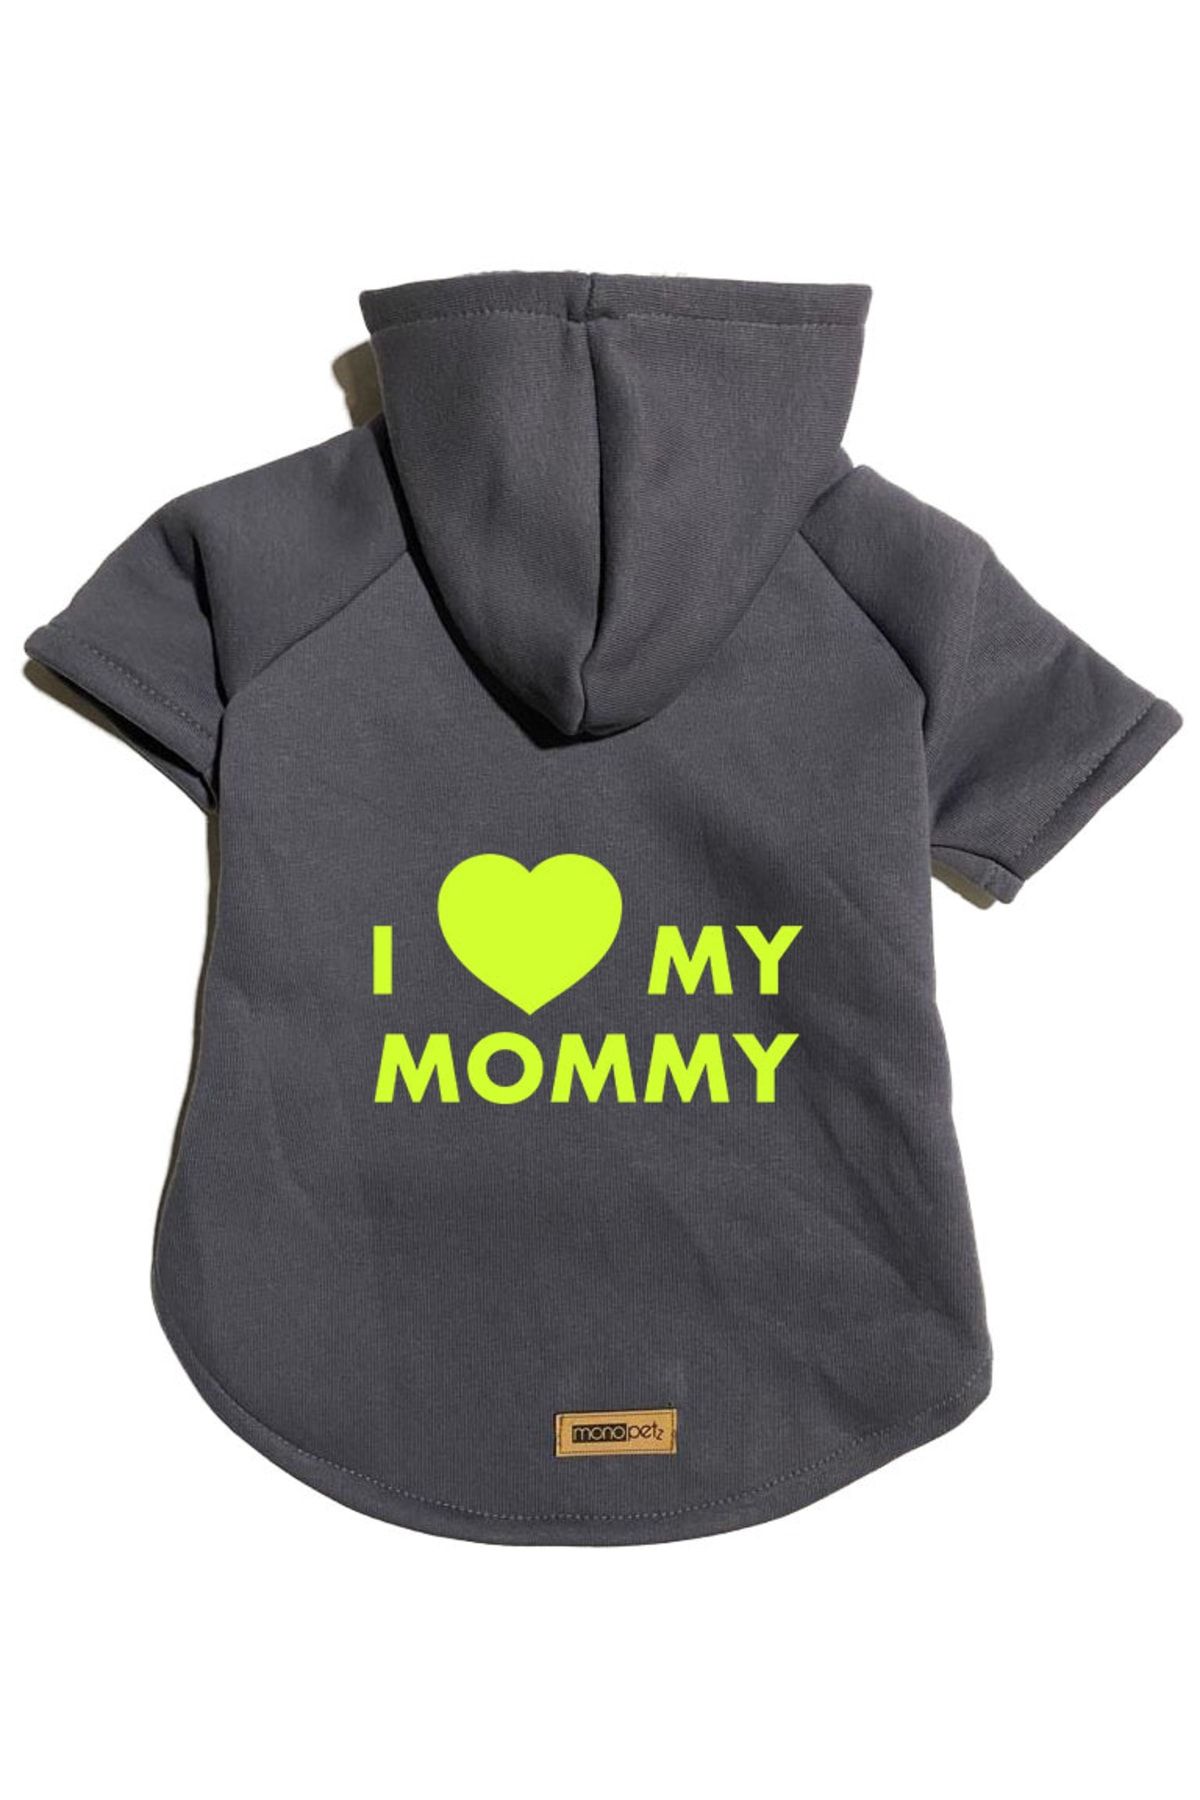 Monopetz Kapişonlu Sweatshirt Köpek Ve Kedi Kıyafeti  L Beden - Antrasit I Love Mommy